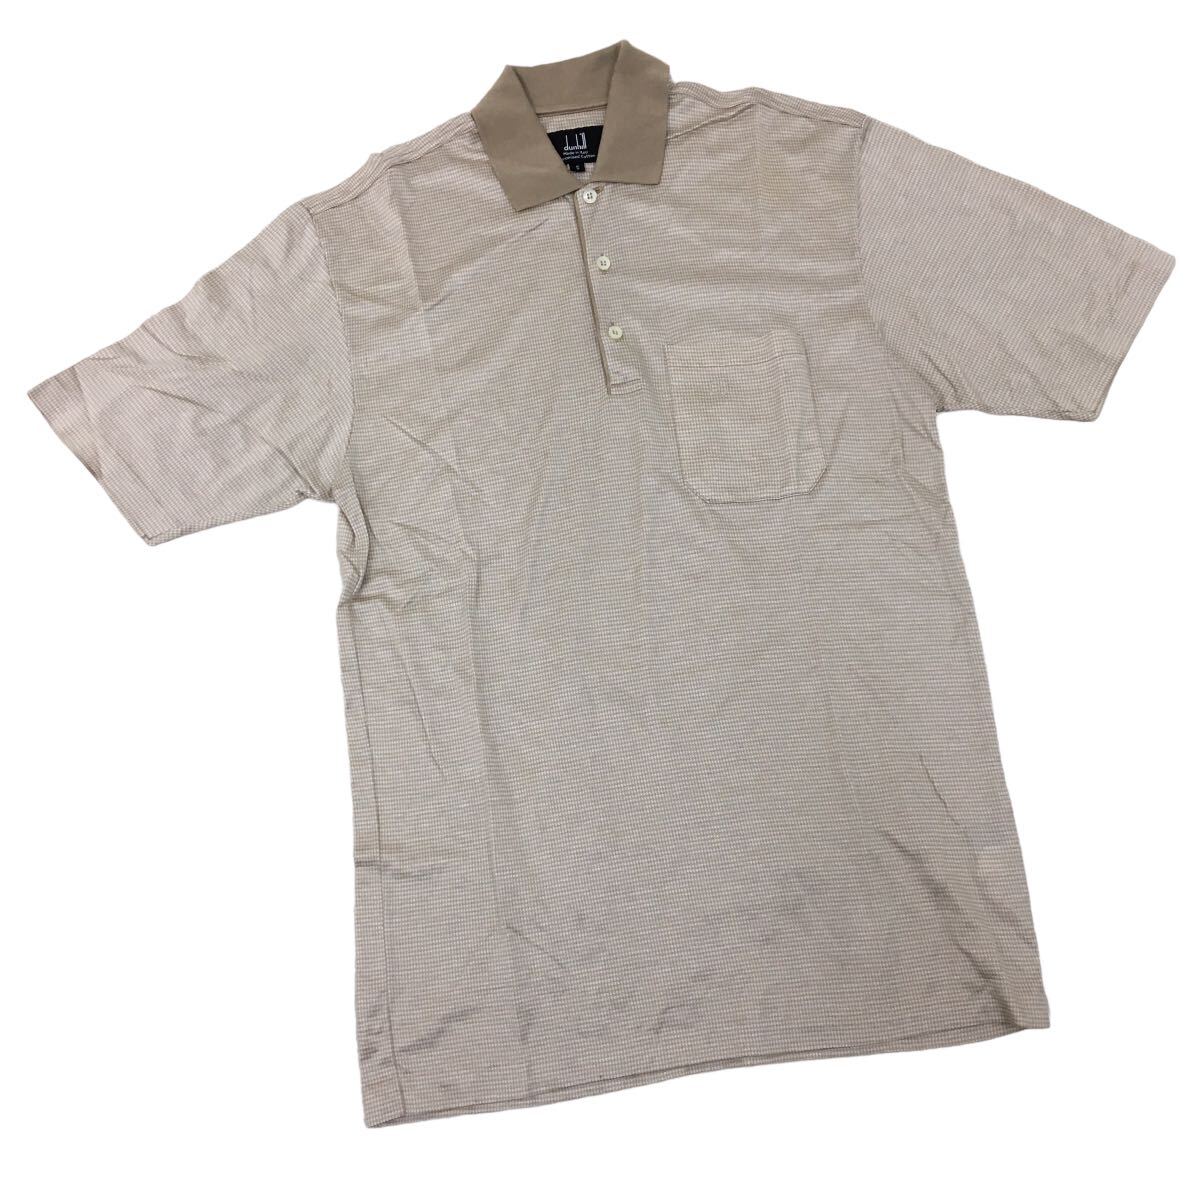 NC211 イタリア製 dunhill ダンヒル 半袖 ポロシャツ シャツ トップス カットソー メンズ S ベージュ 千鳥格子柄 総柄_画像1